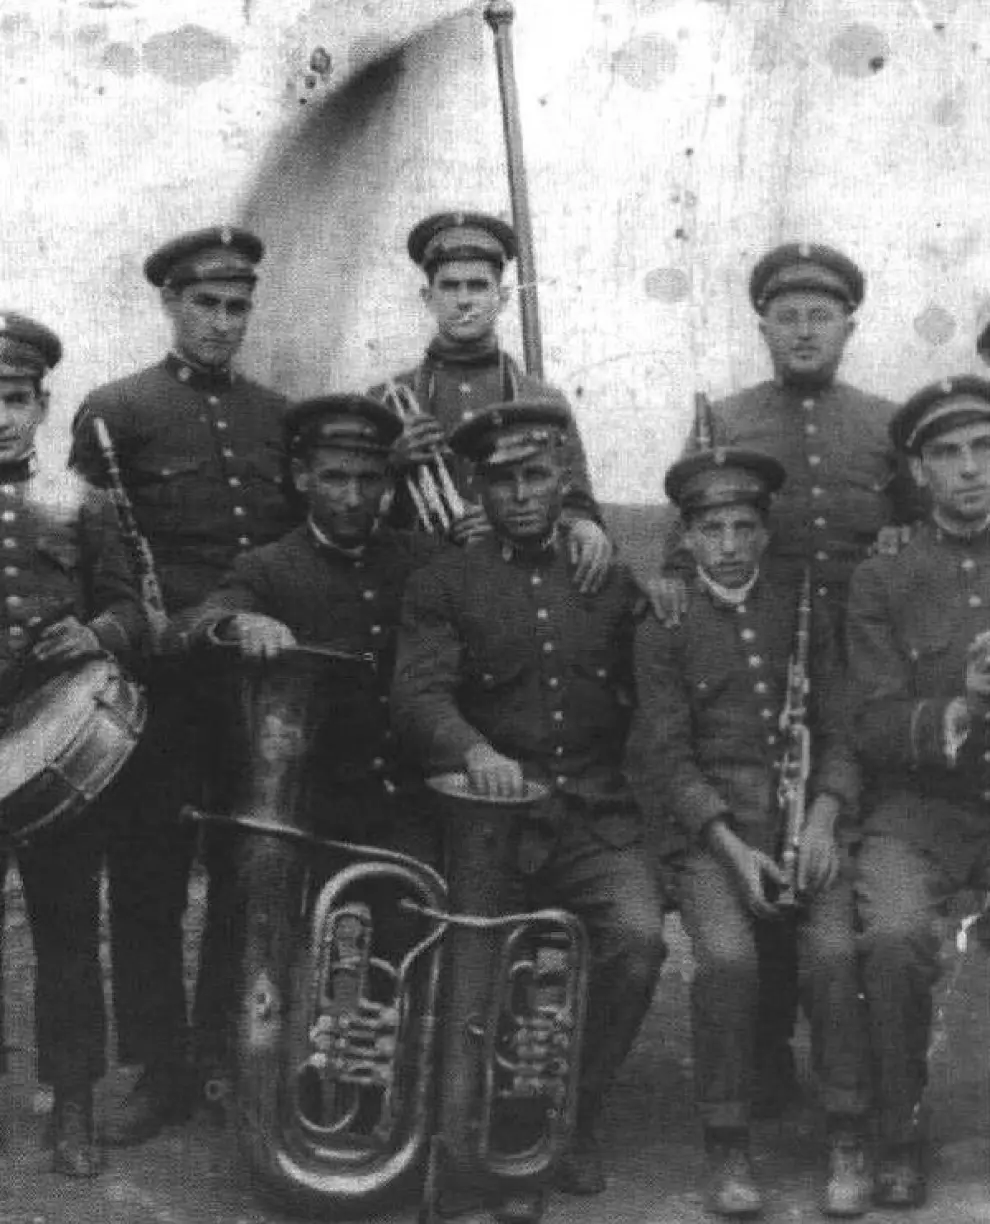 Banda de música de Pedrola. Principios del siglo XX.